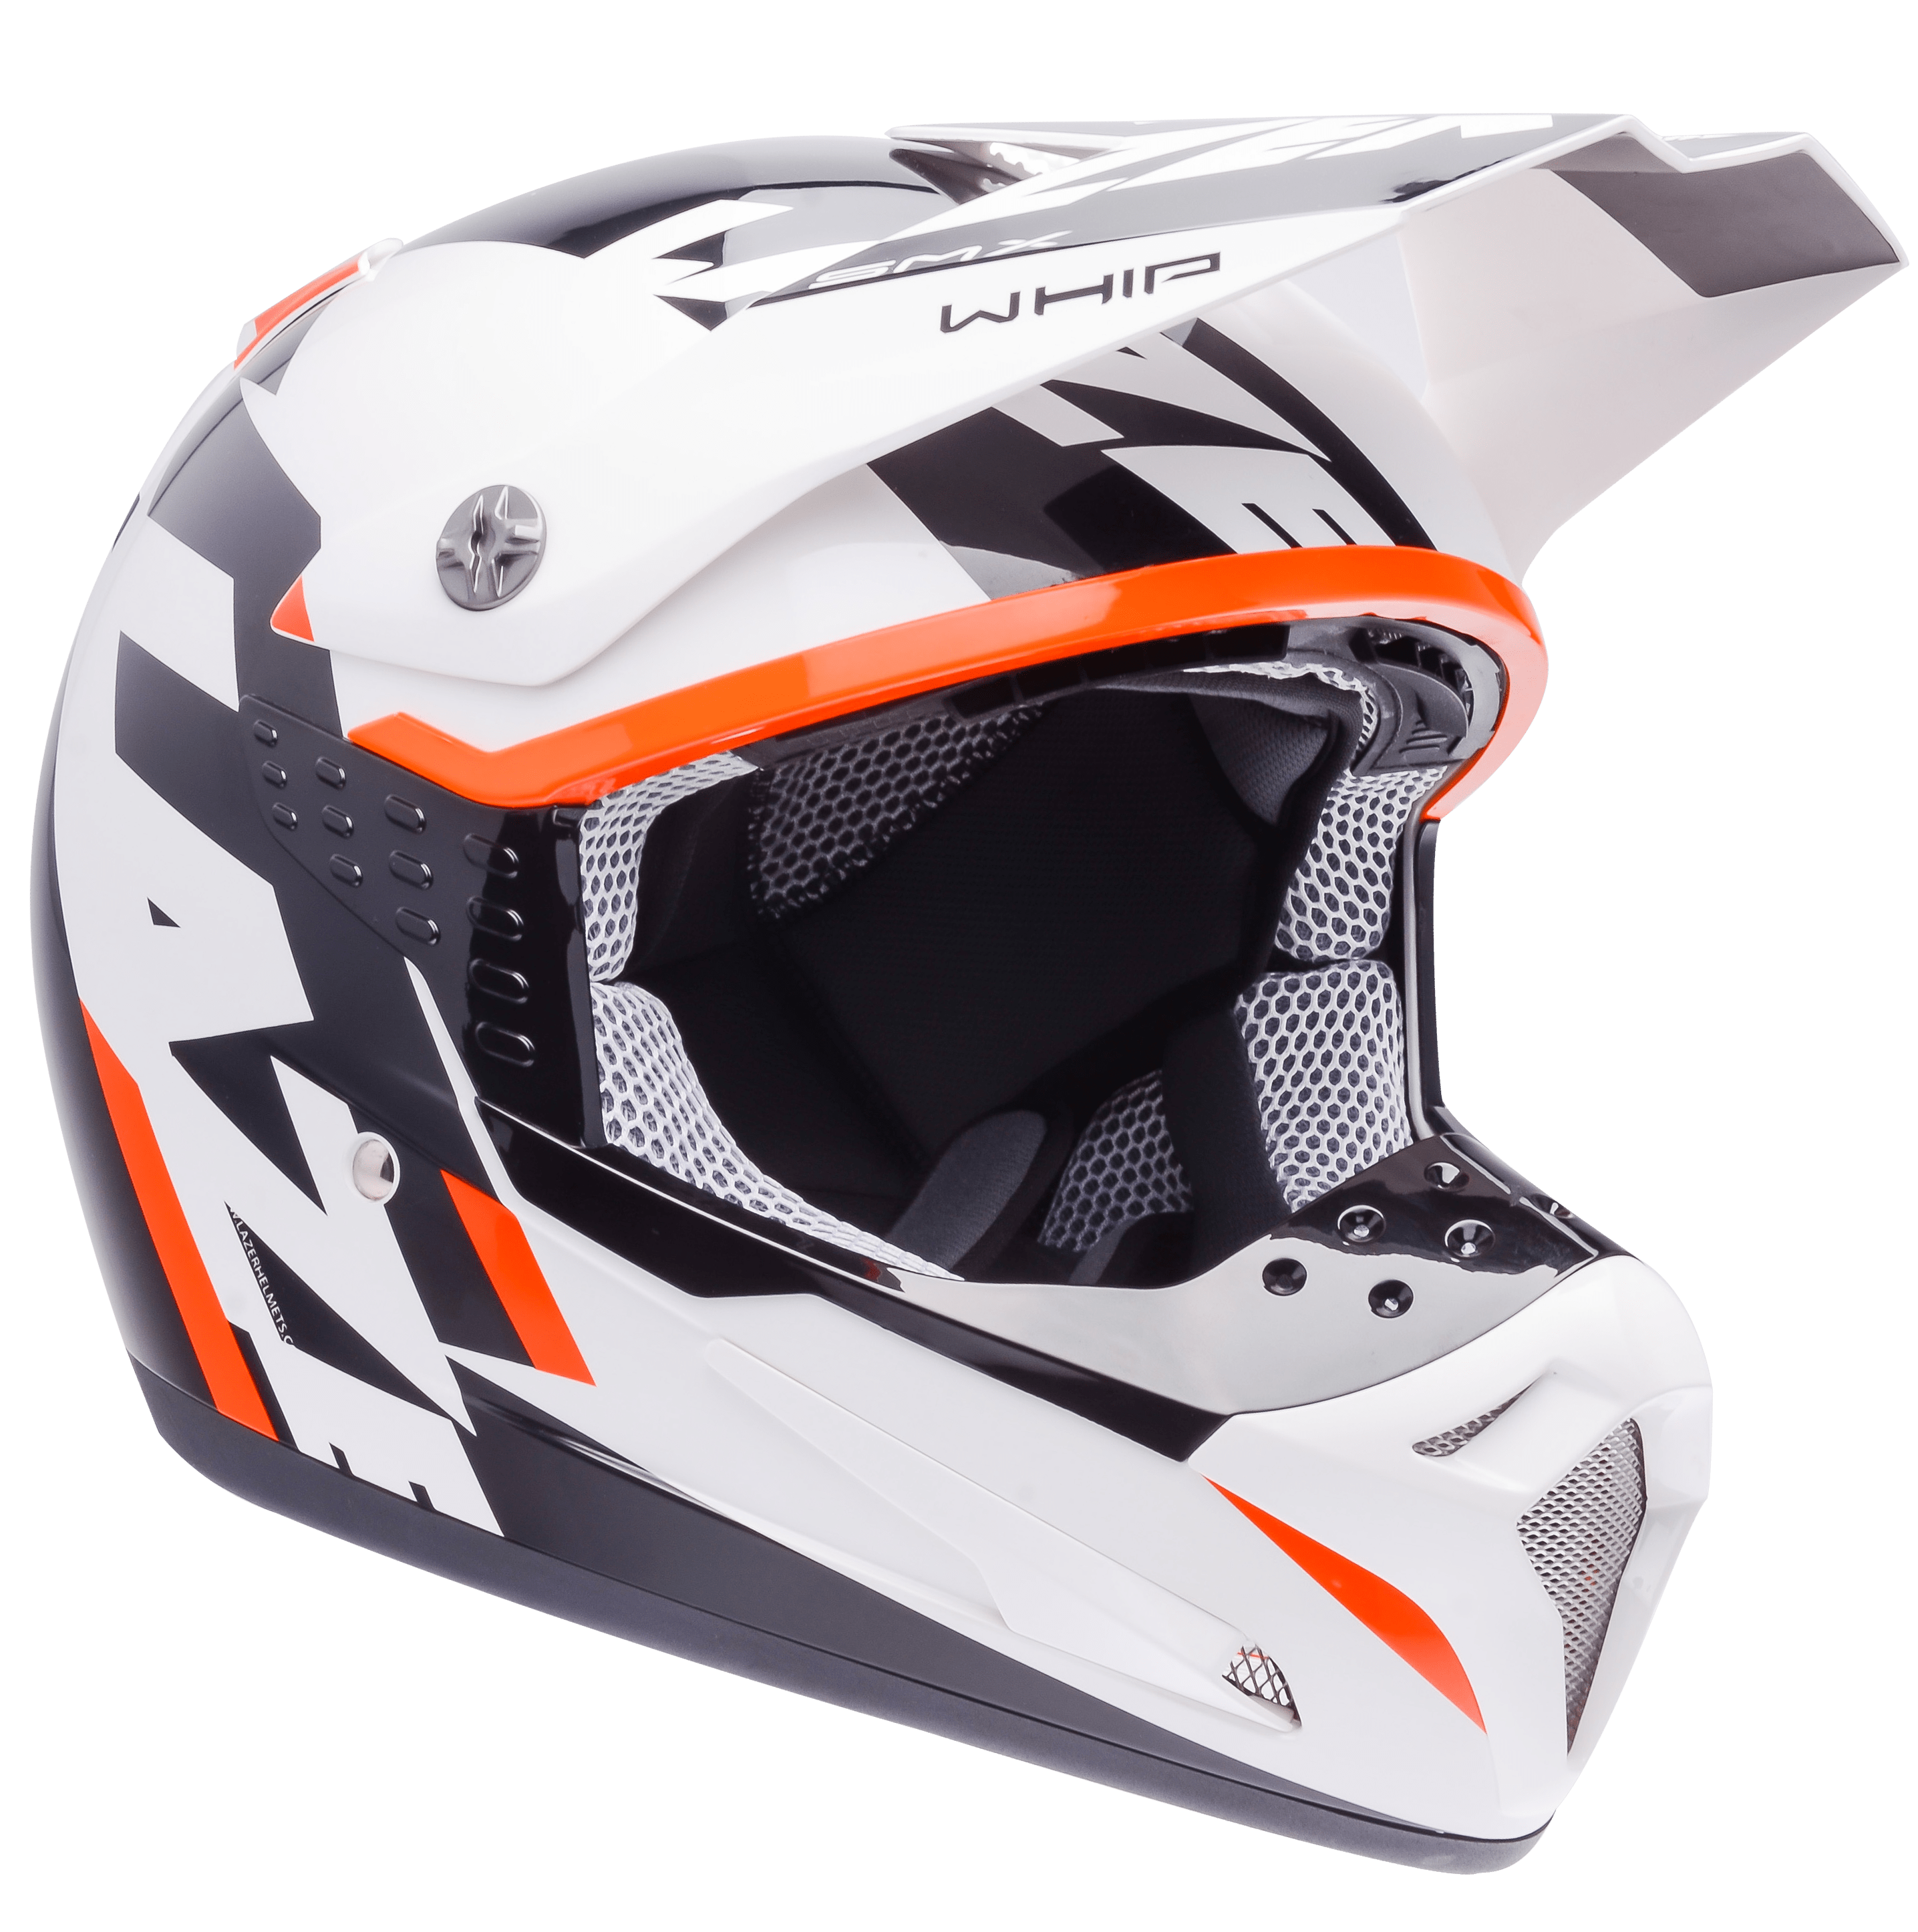 Motorcycle Helmet PNG HD - 135787